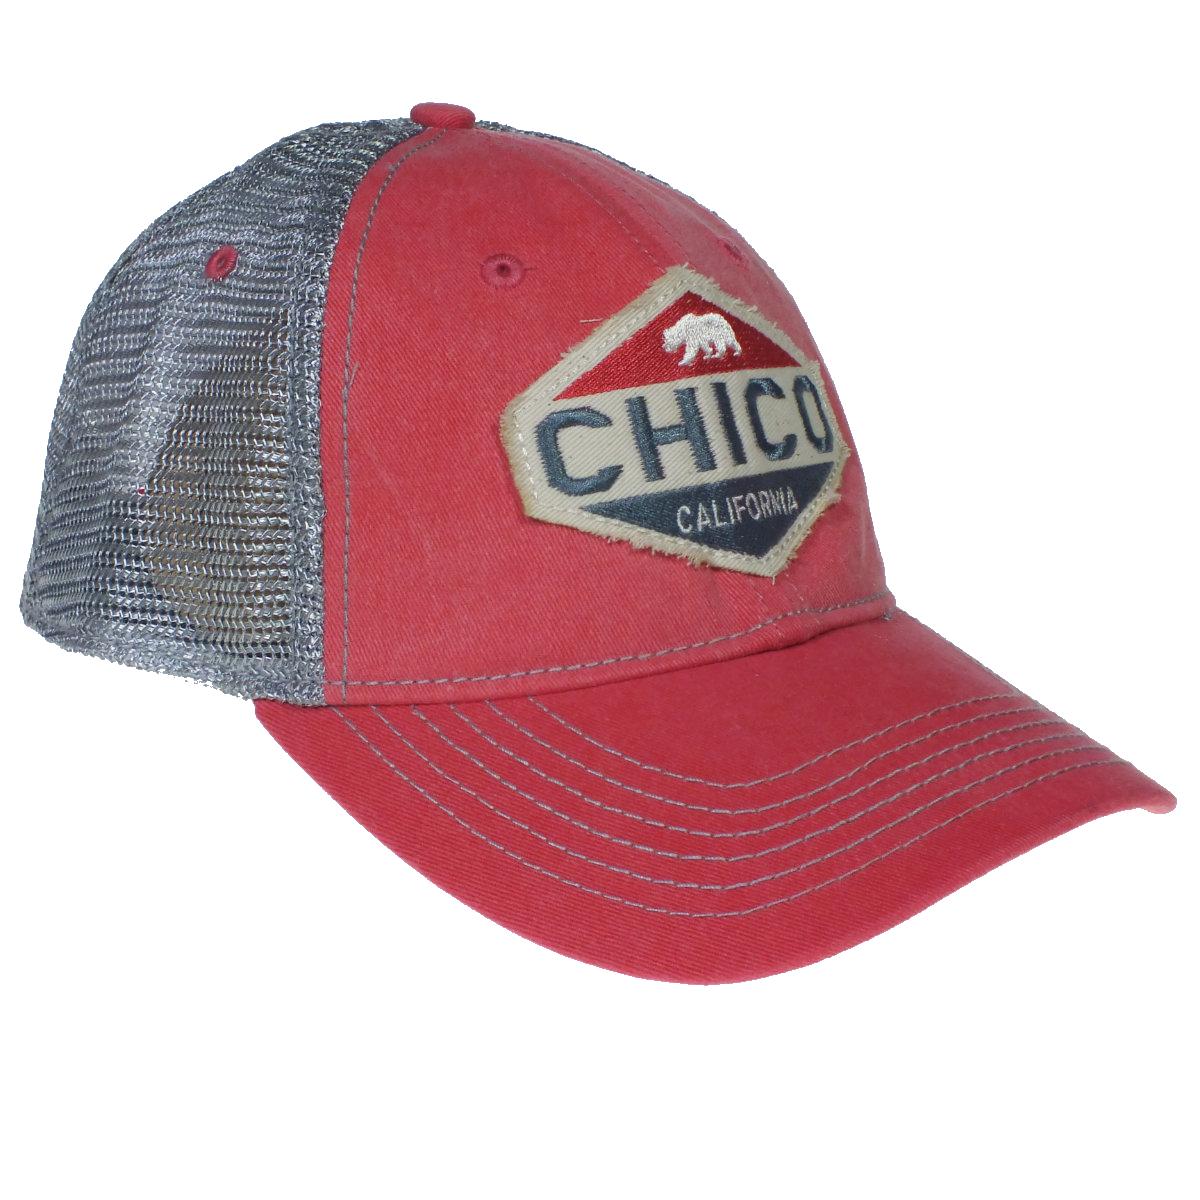 Chico Hat - Oil Burner PAPAYA   